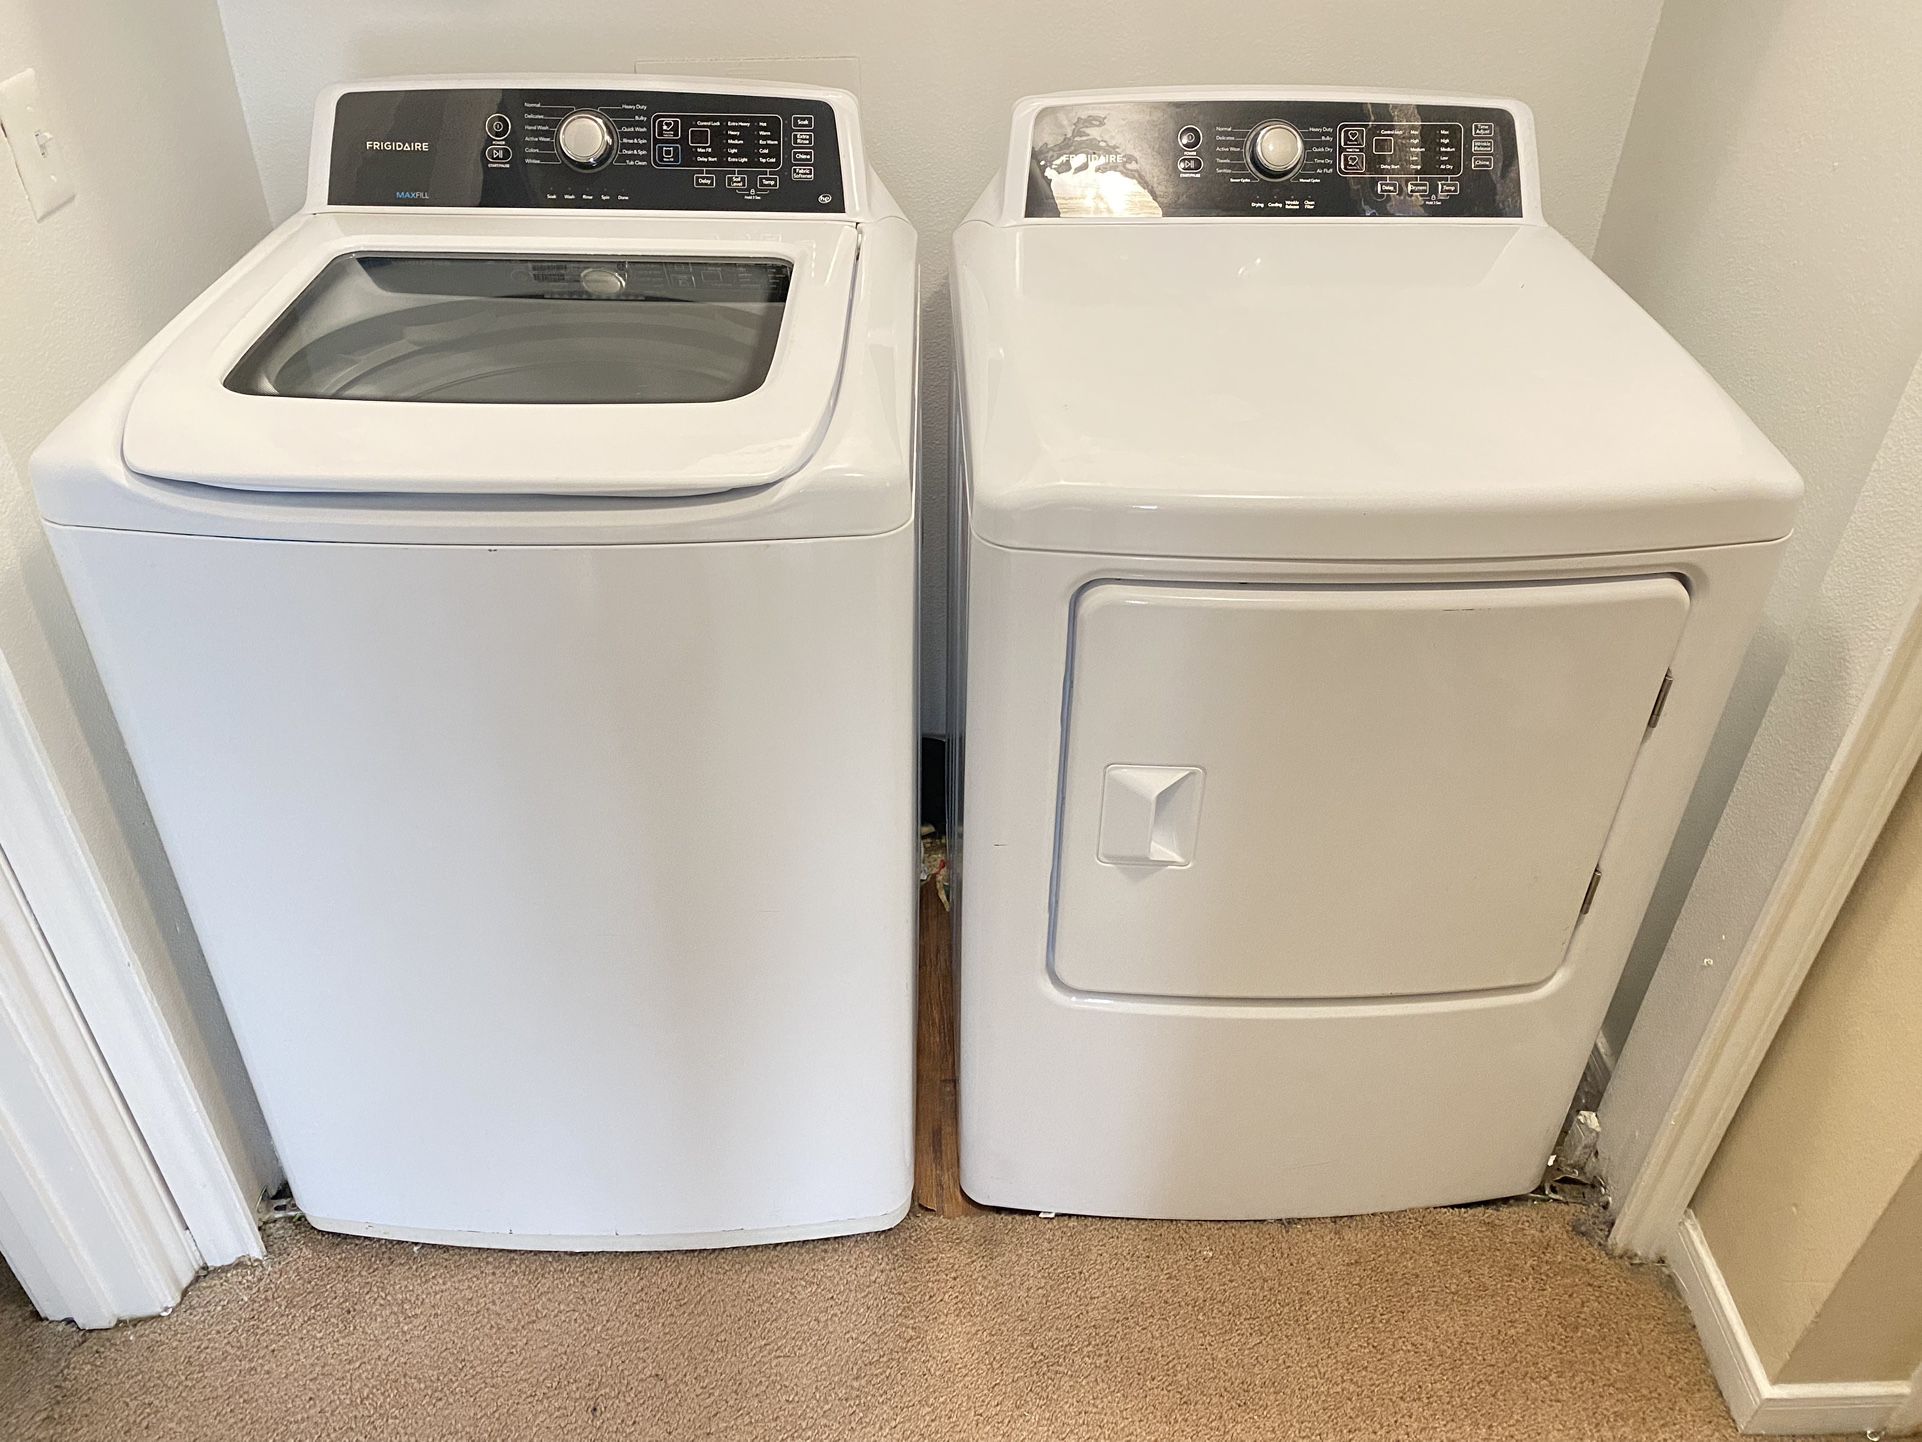 Frigidaire Washer & Dryer Set